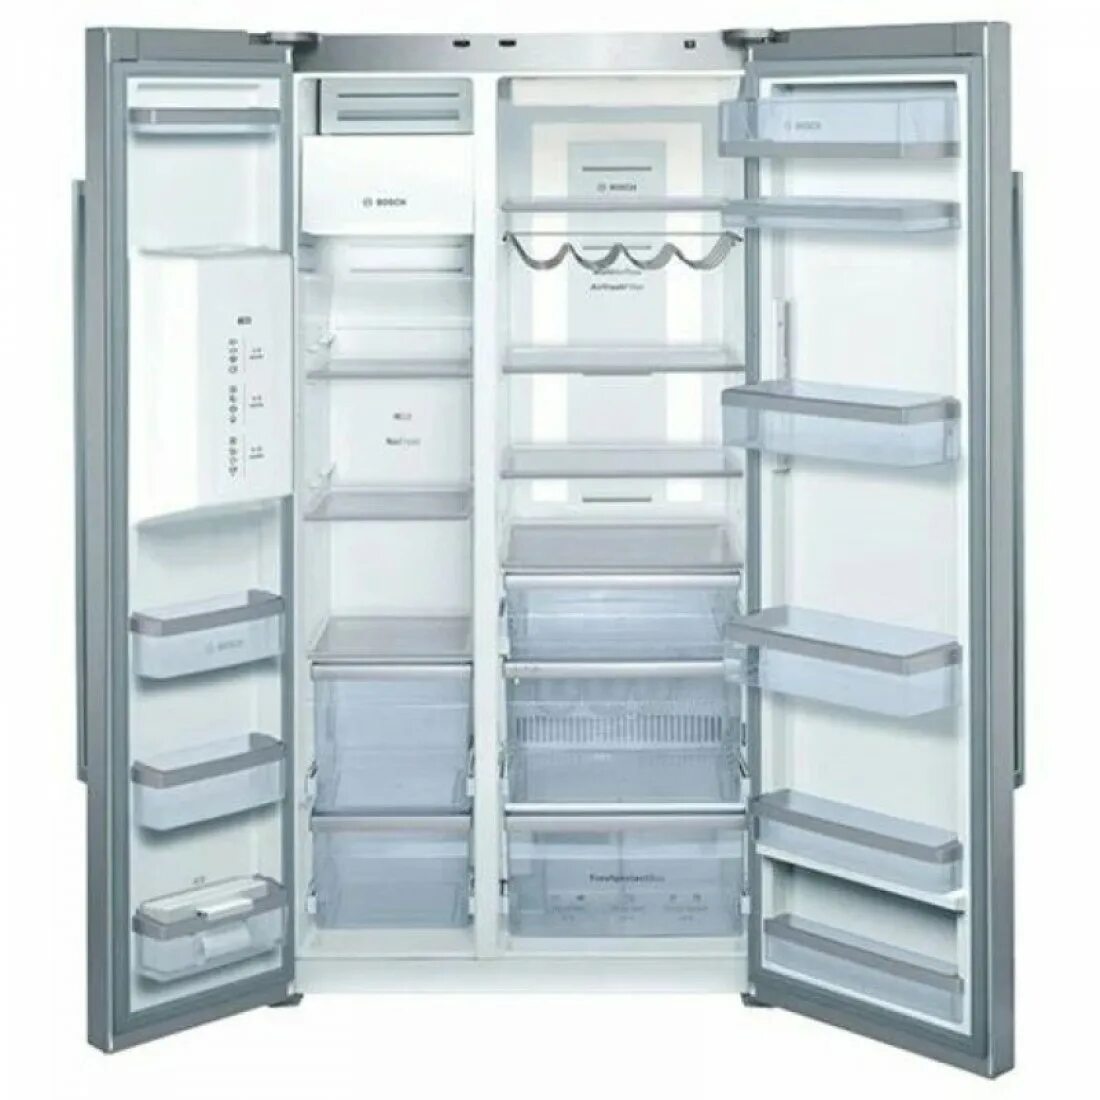 Холодильник Bosch kad62p91. Холодильник Bosch Side by Side. Холодильник Bosch kan58a50. Bosch Multi Air Flow холодильник. Купить холодильник в гродно